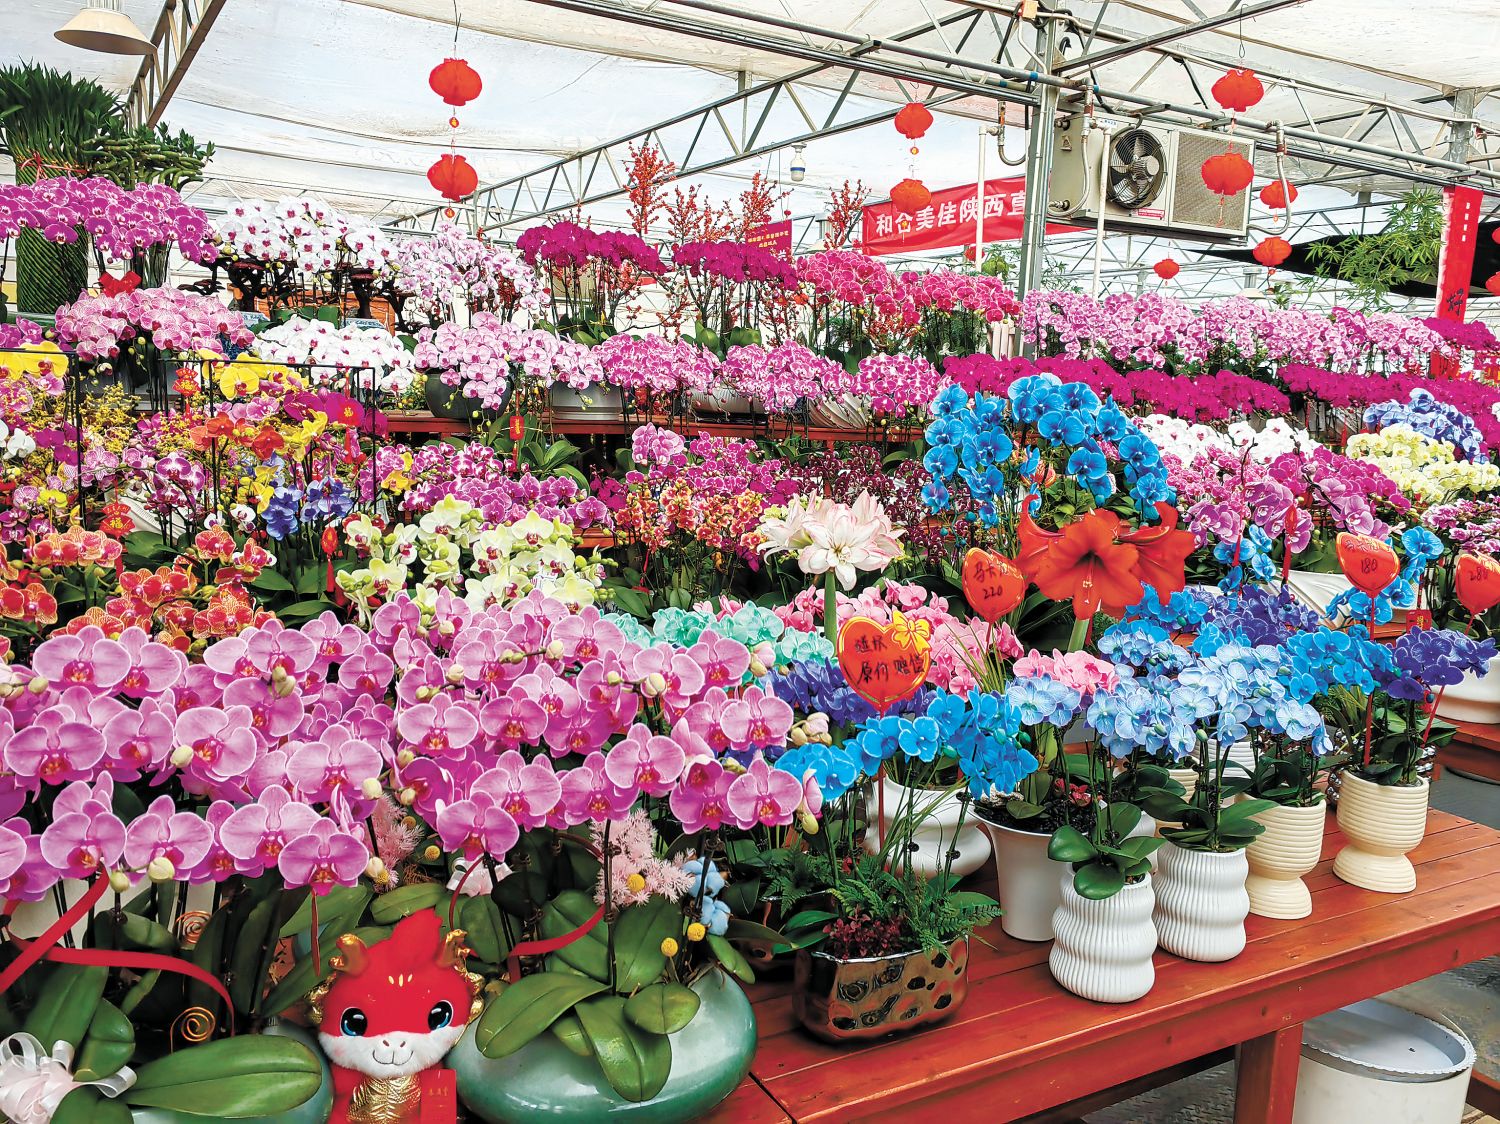 从年宵花市场看花卉产业新趋势